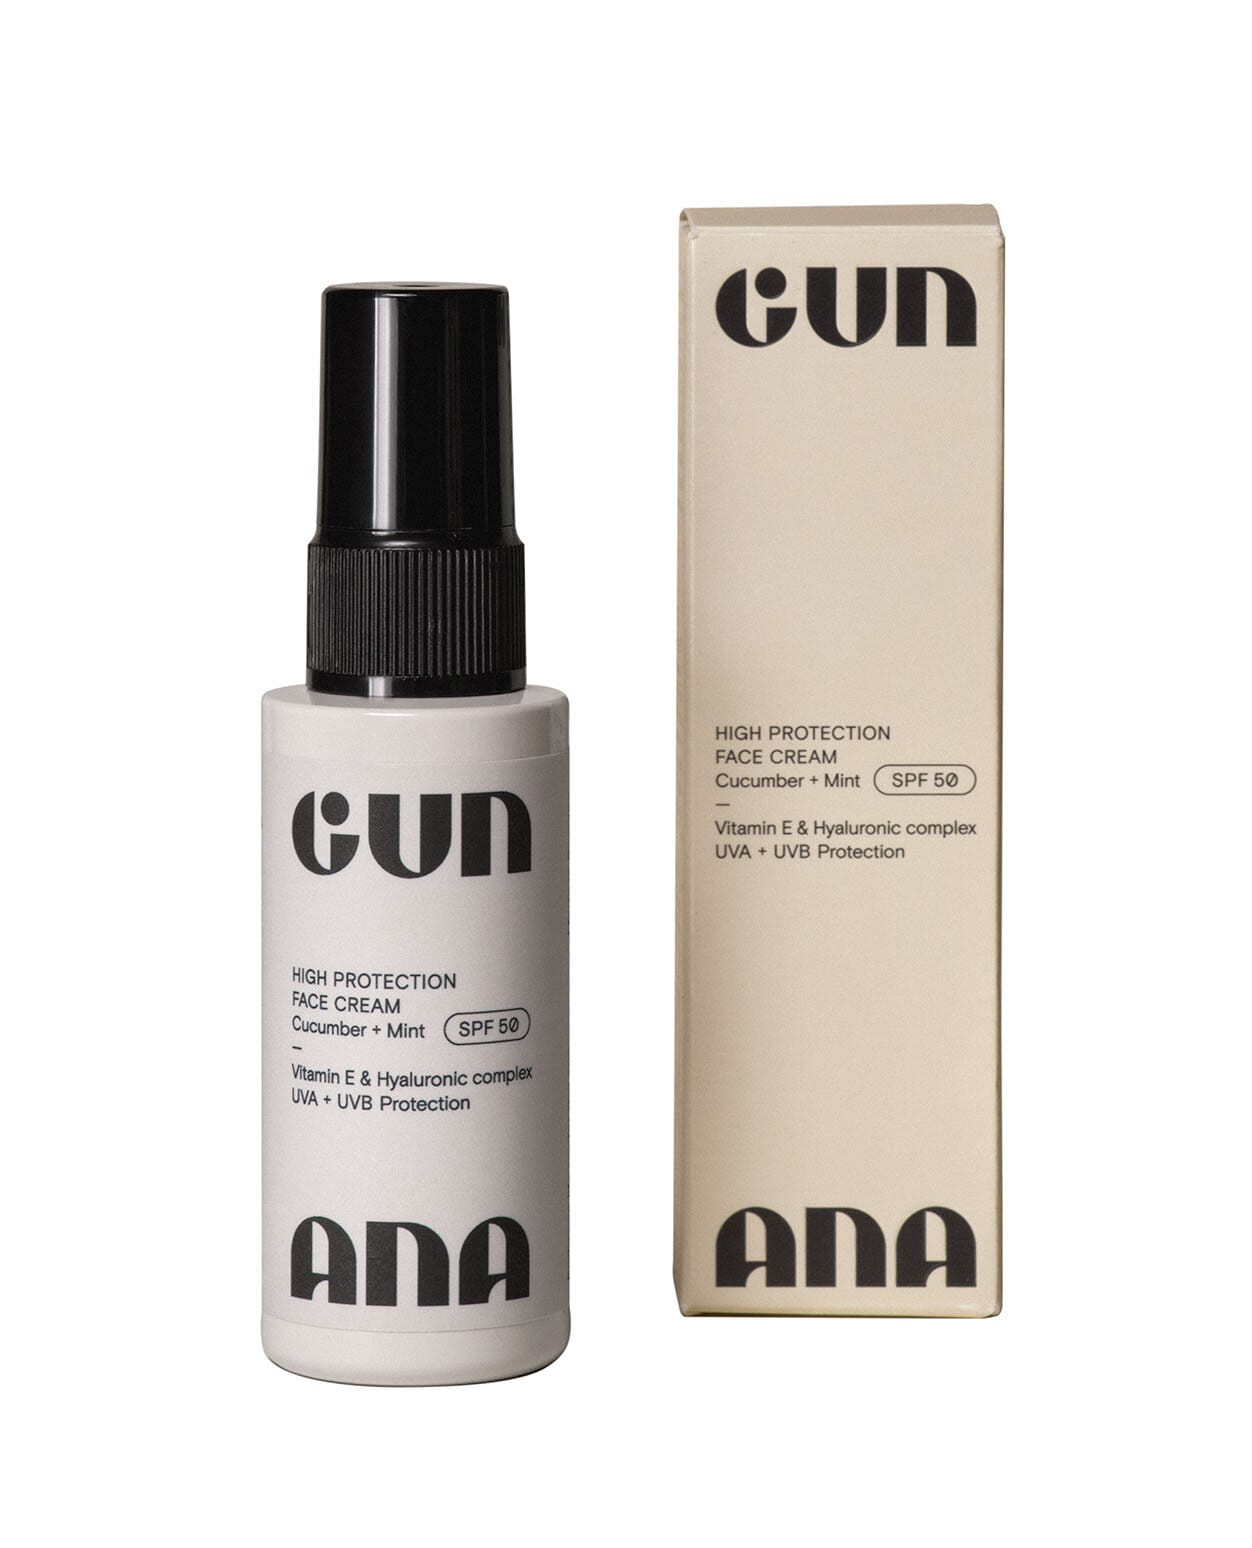 Gun Ana Face Cream SPF 50 Vit